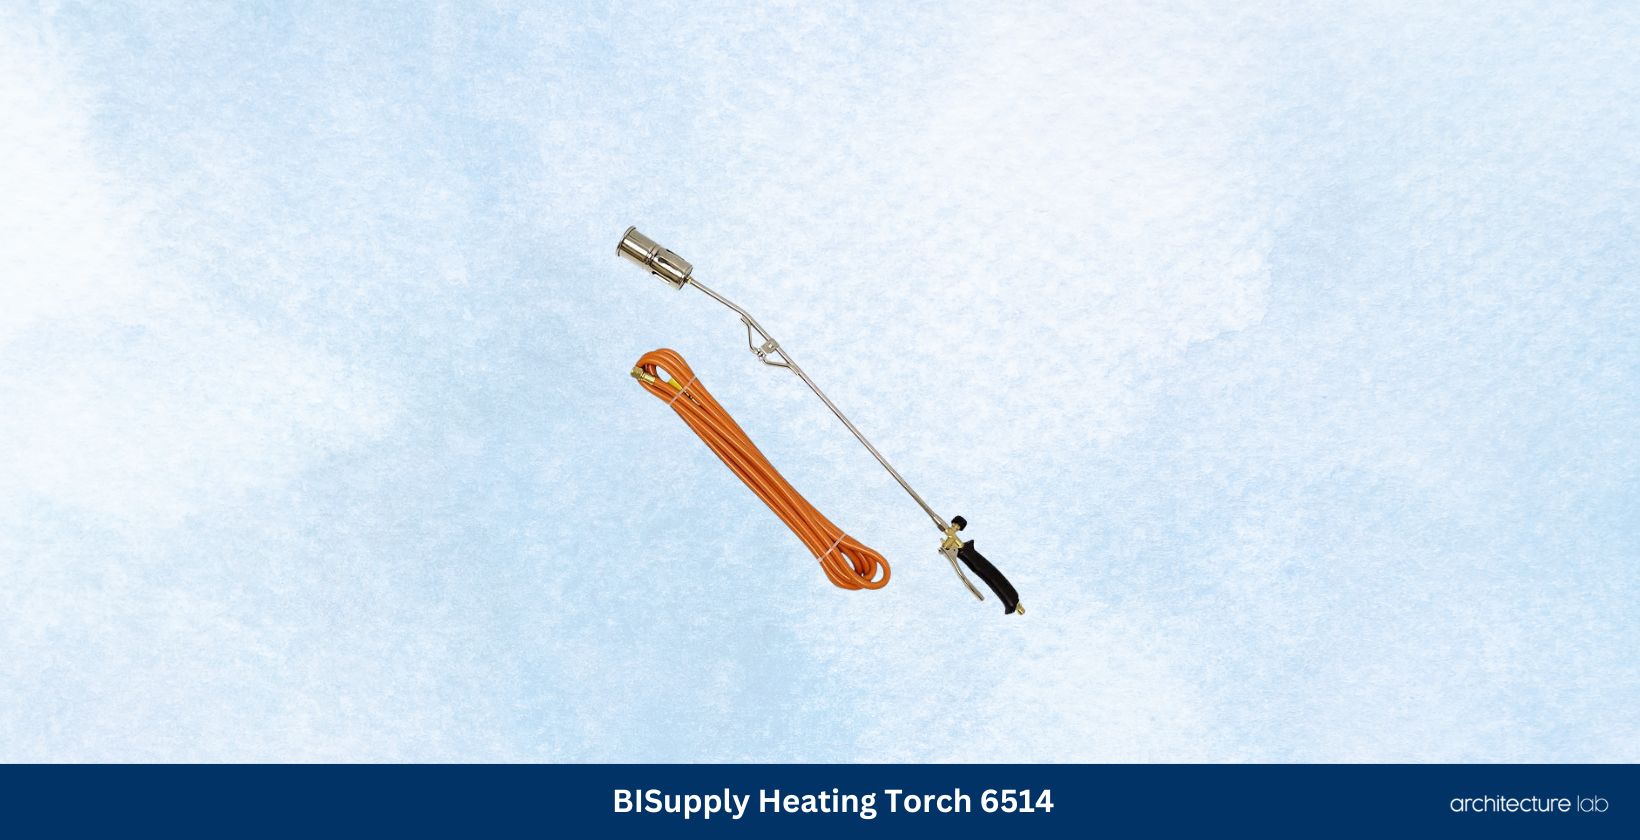 Bisupply heating torch 6514